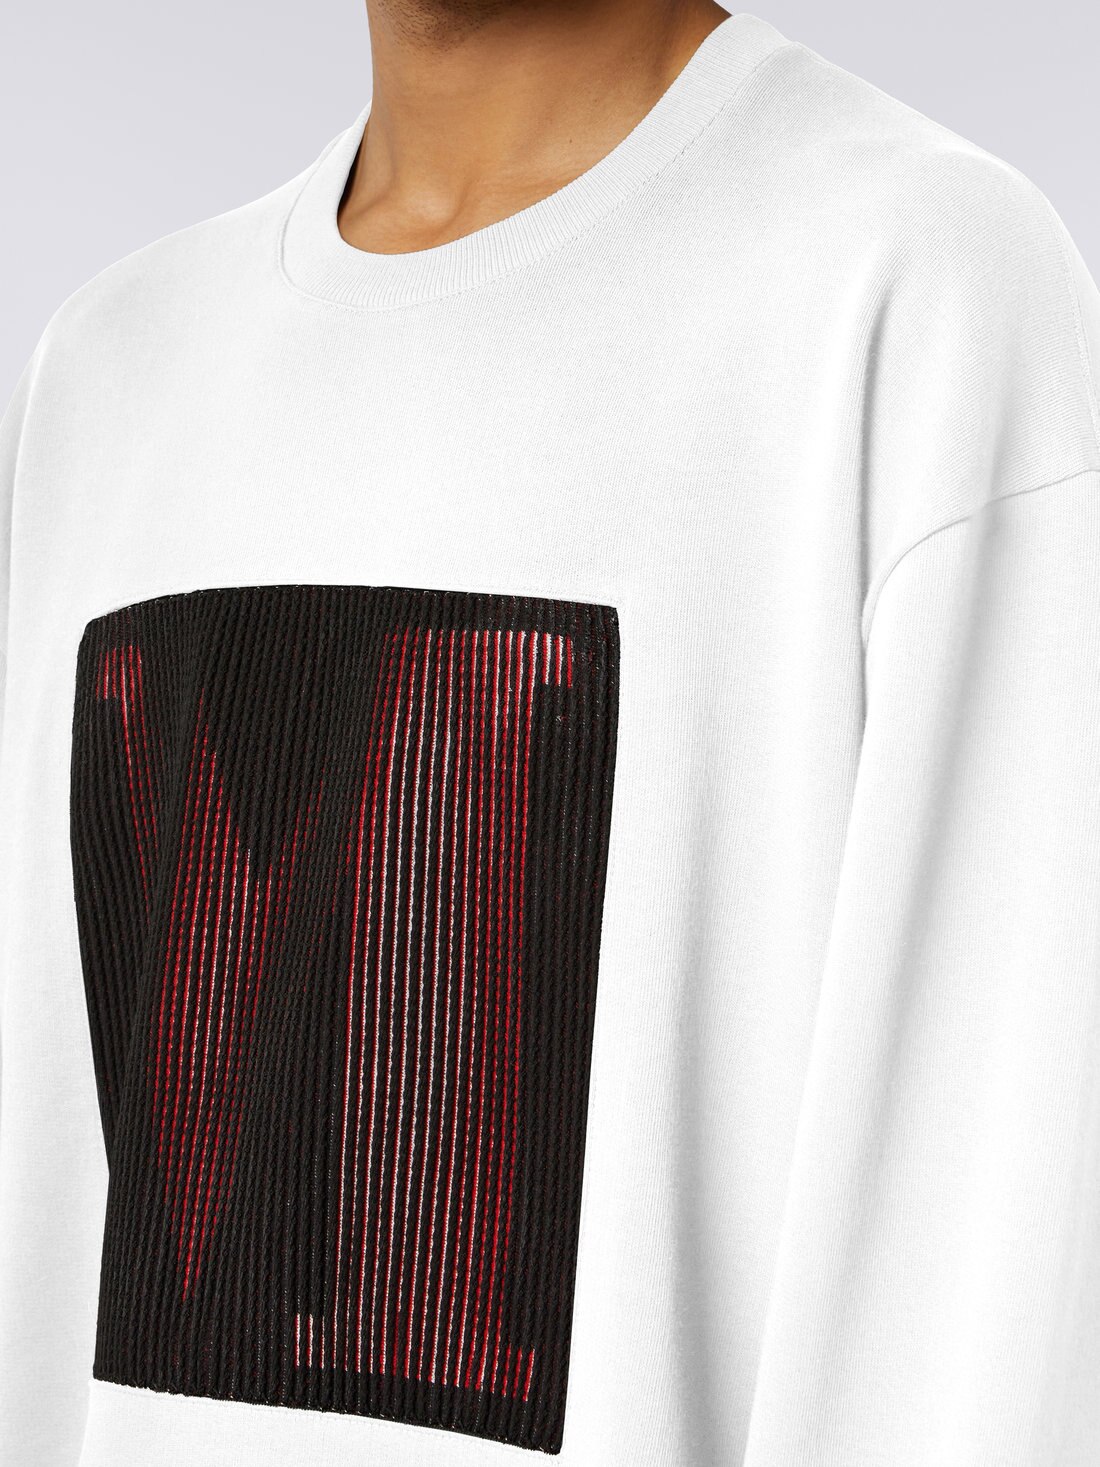 Sweatshirt aus Baumwolle mit Rundhalsausschnitt und Makro-Logo in Zusammenarbeit mit Mike Maignan, Weiß - TS23SW05BJ00HYS019Y - 4